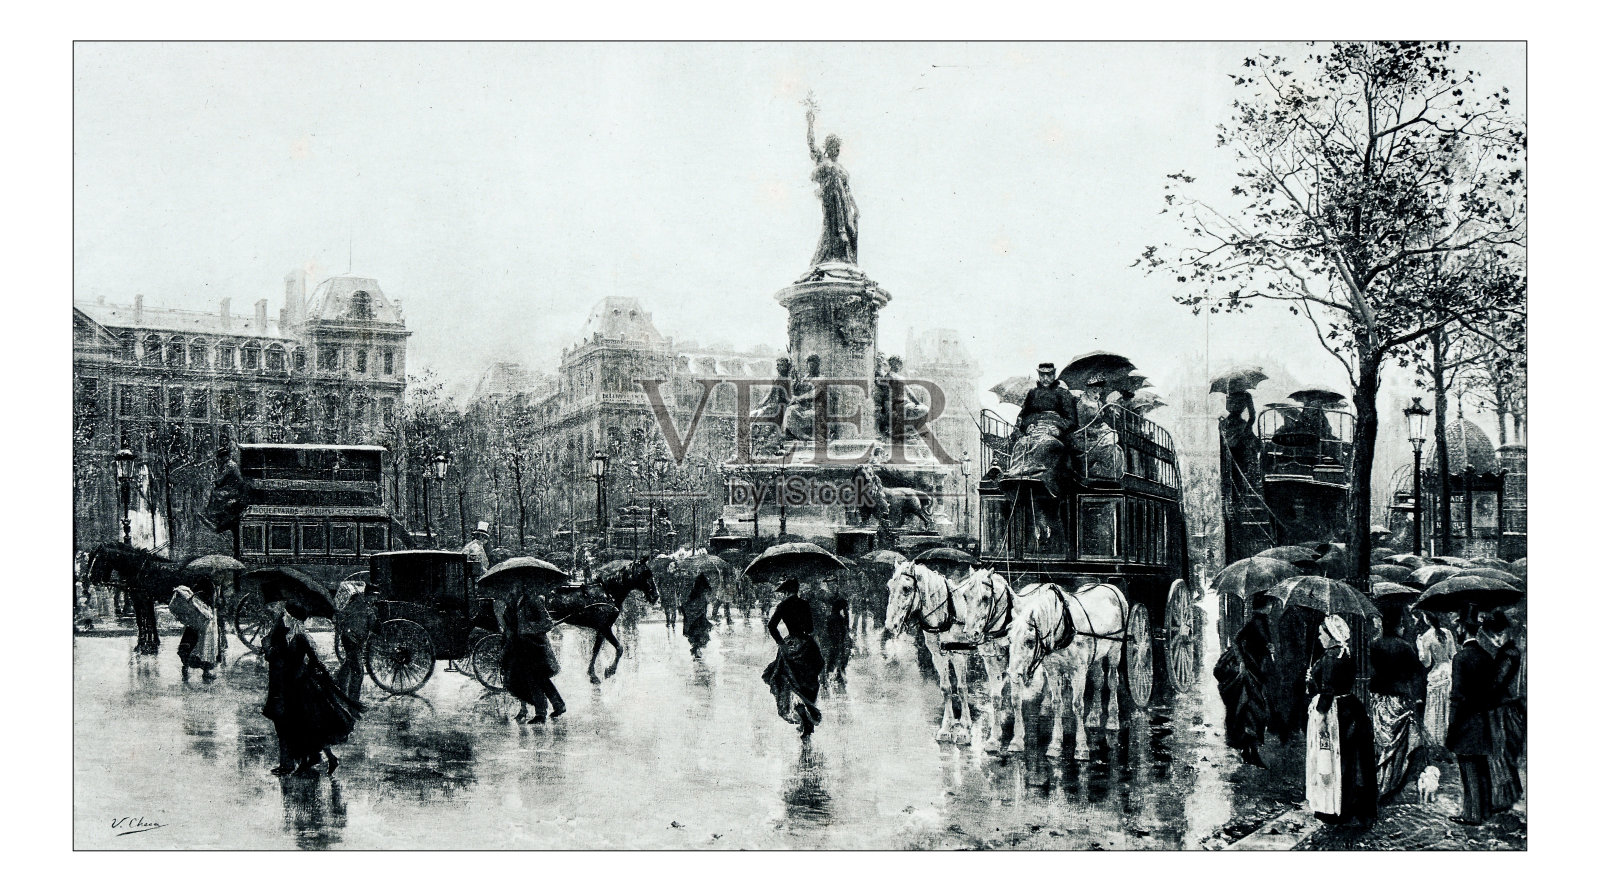 “共和国广场”(Place de la Republique)的古董插图照片摄影图片